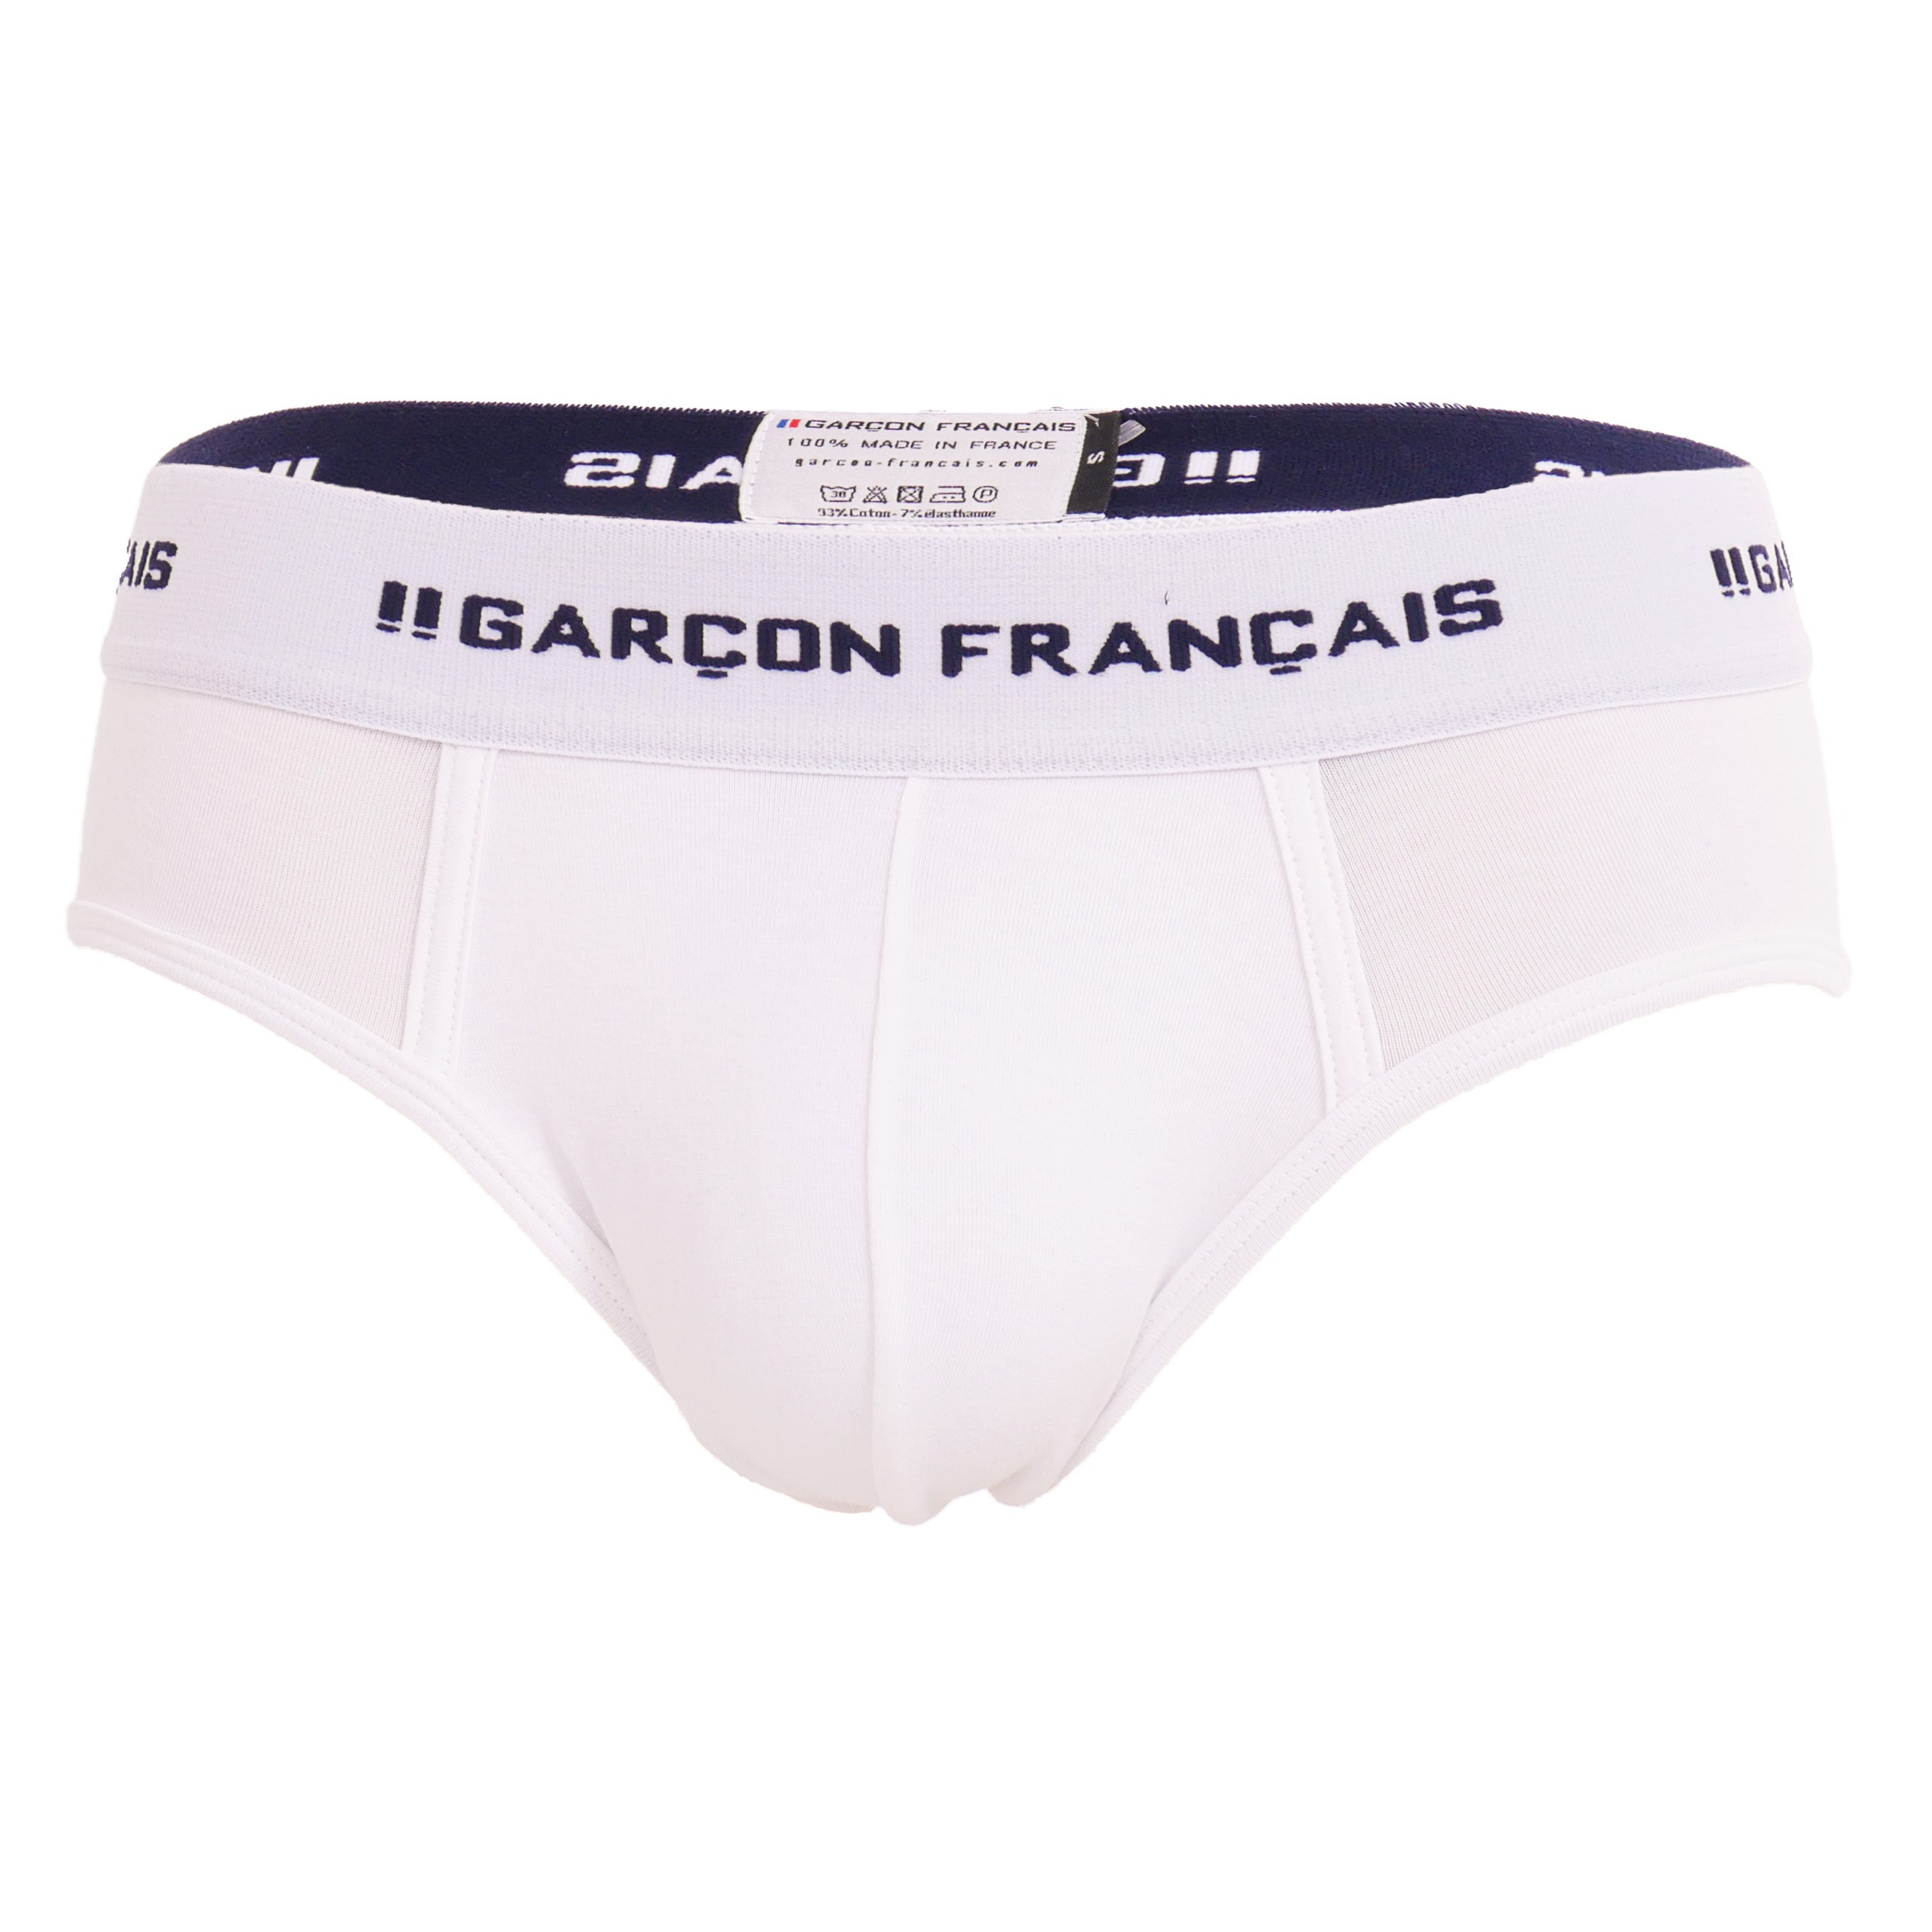 Men's white cotton low-rise briefs - Garçon Français